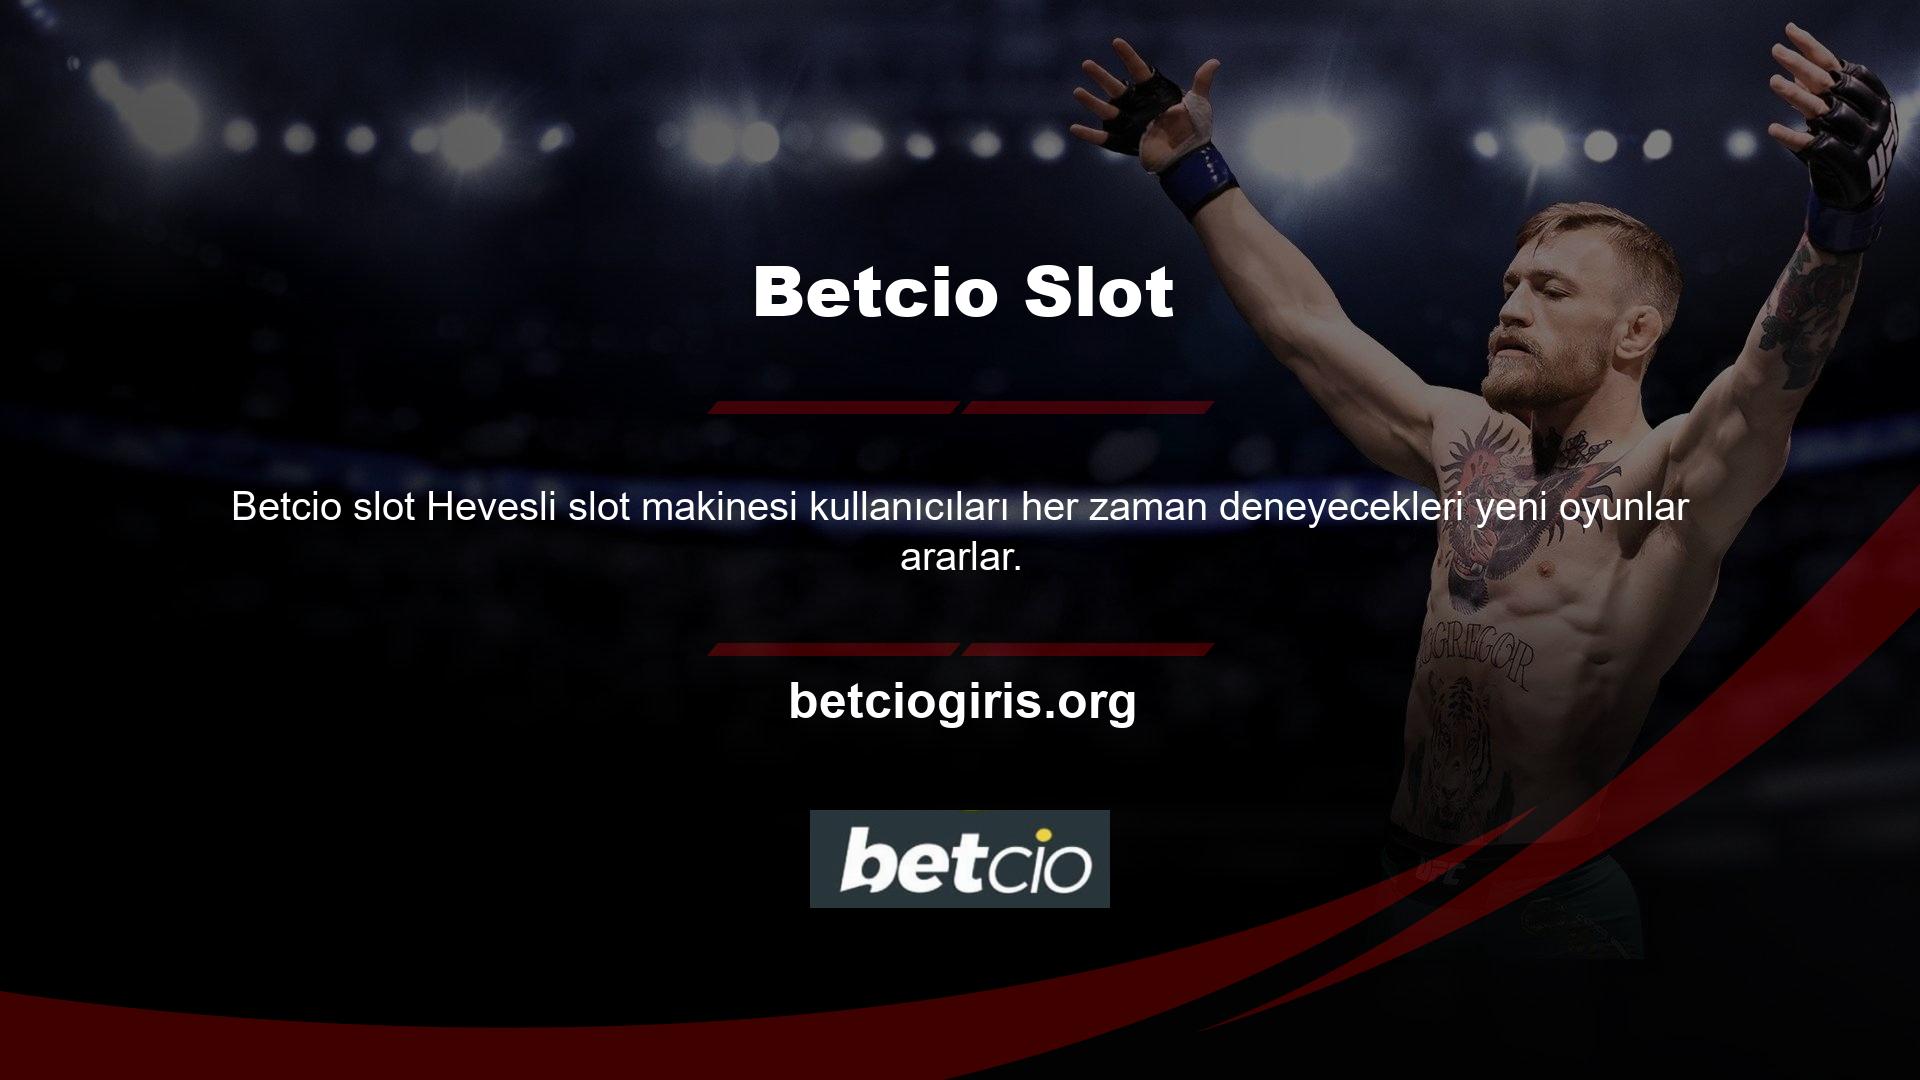 Betcio, slot sayfalarında görüntülenen altyazılı slot oyunu ile sektördeki lider casino sitelerinden biri olarak bilinir